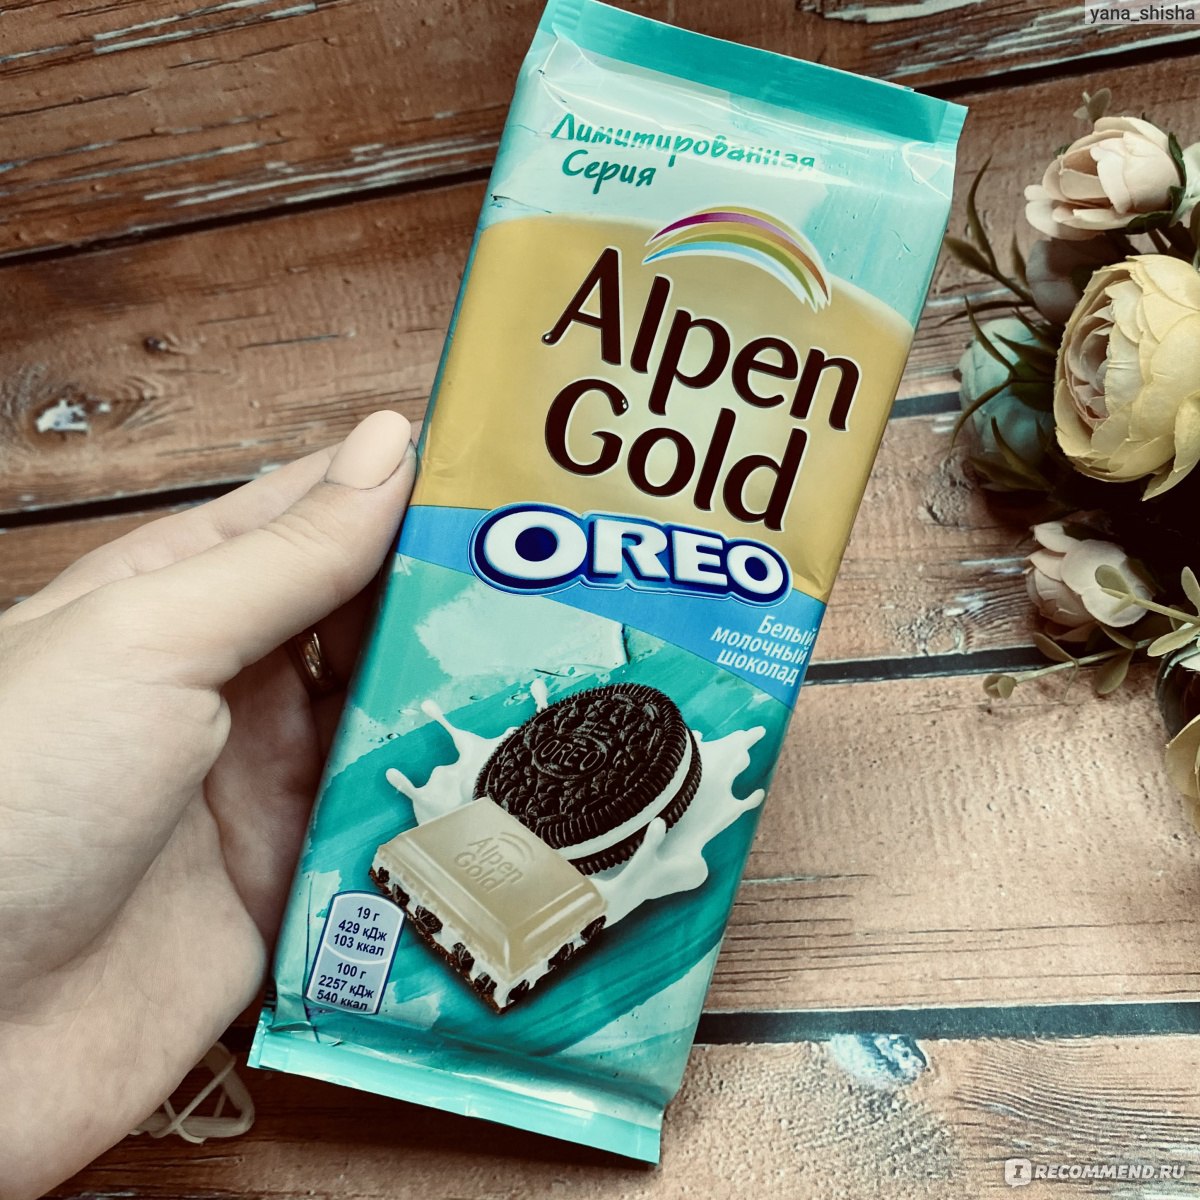 Альпен Гольд Орео белый и молочный шоколад